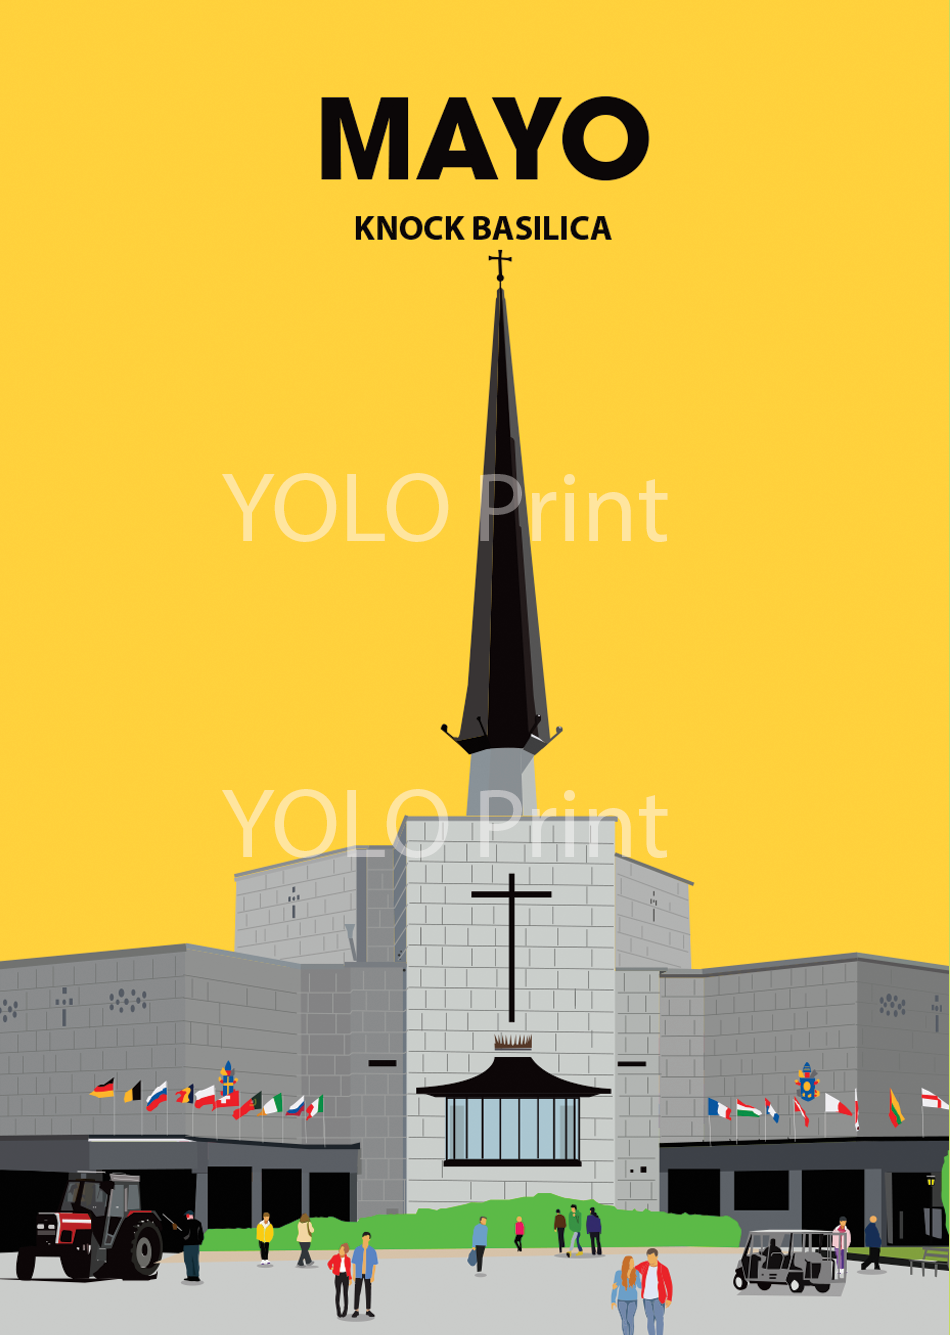 Mayo Postcard or A4 Mounted Print  - Knock Basilica